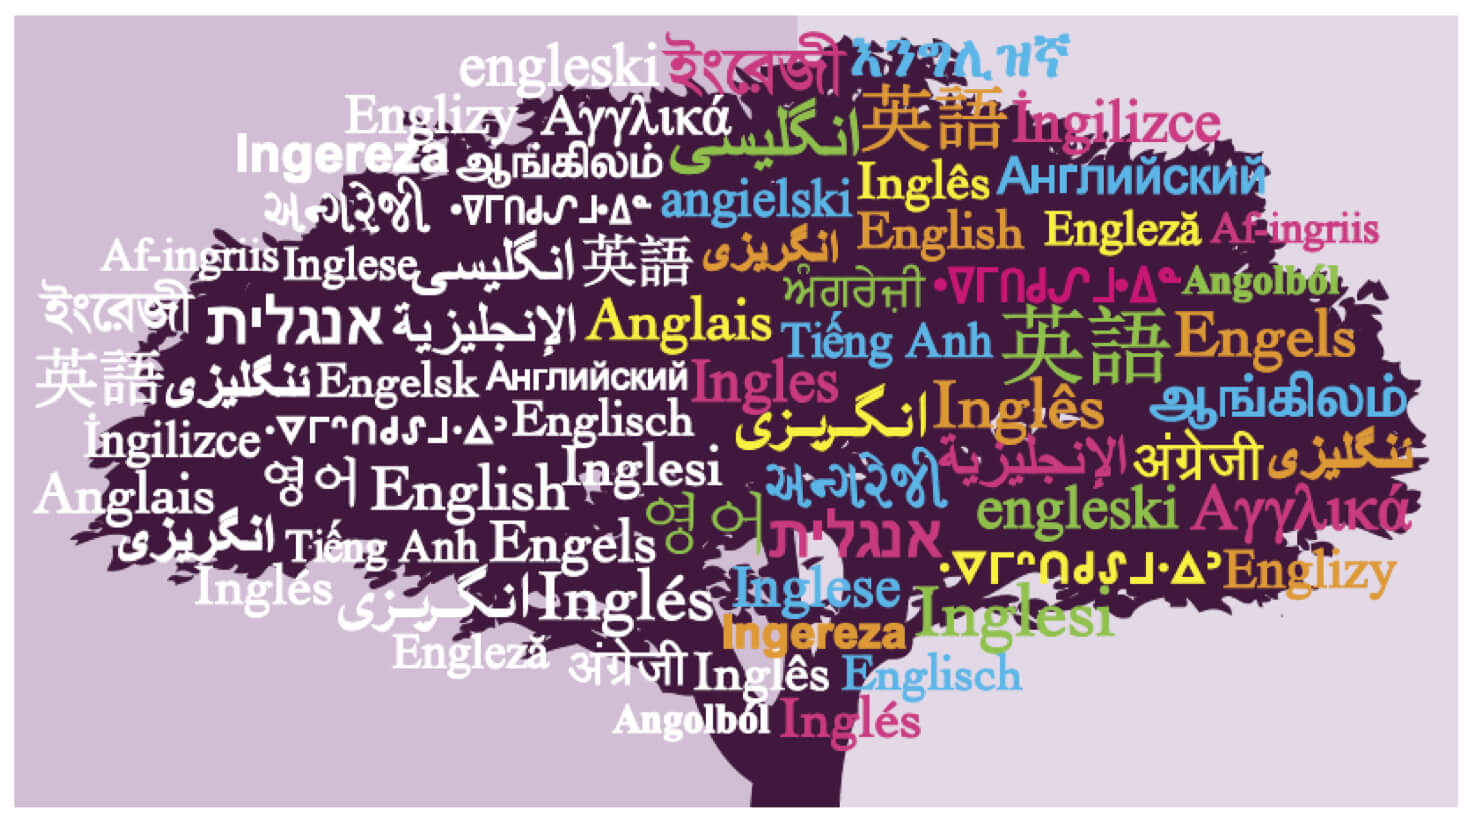 بررسی یادگیری زبان انگلیسی در ایران